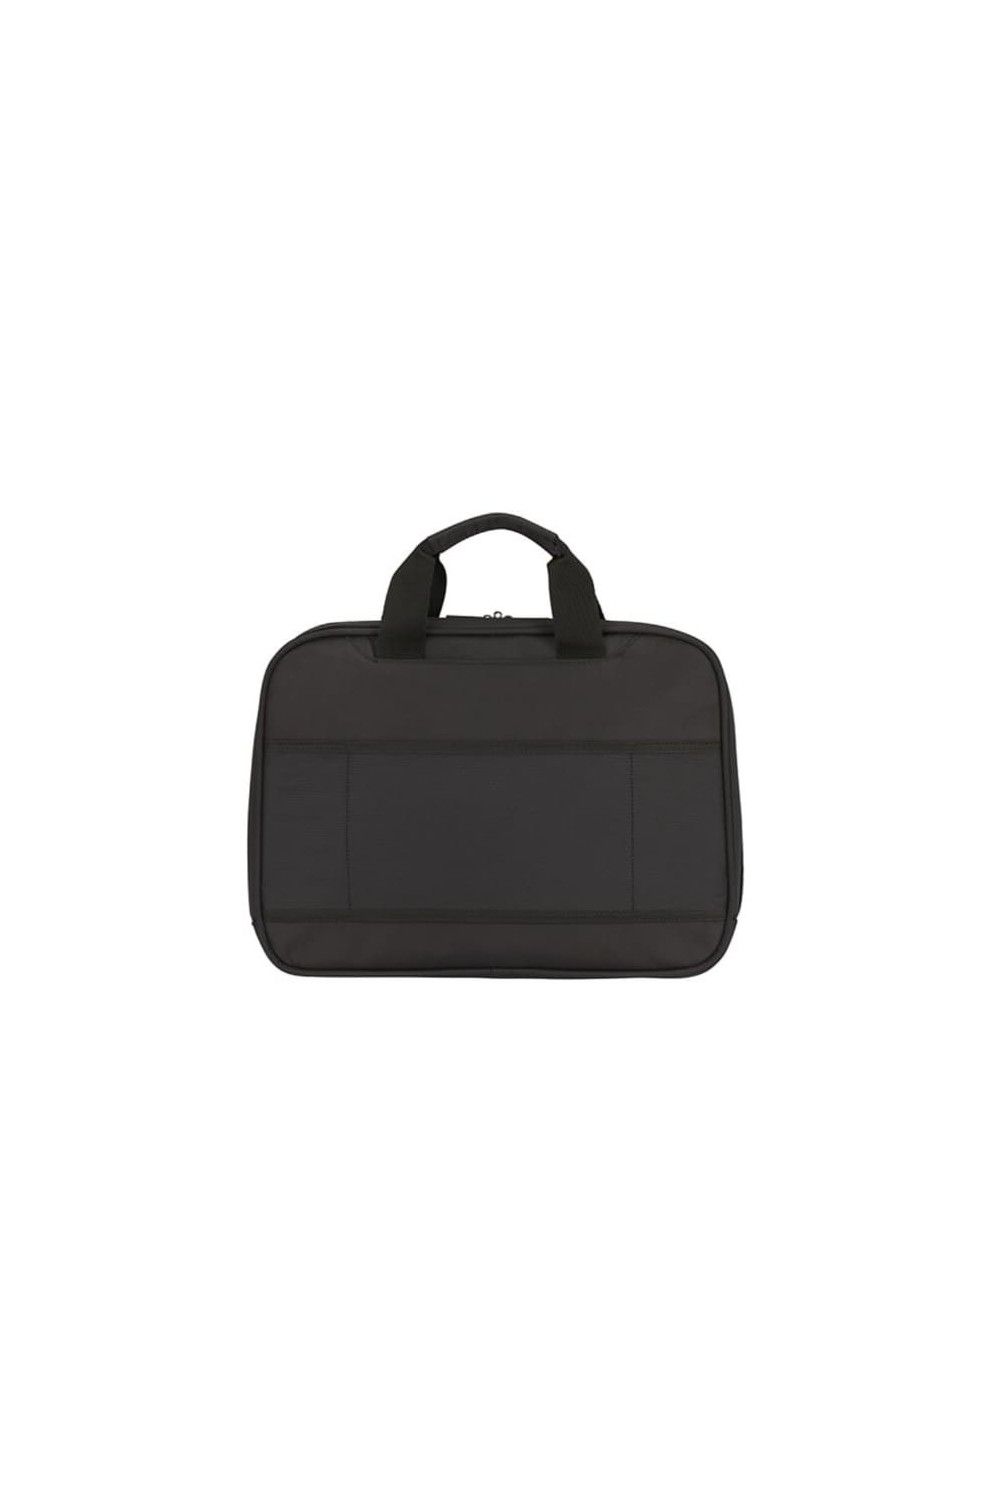 Samsonite Vectura Evo briefcase 15.6 inches 10L